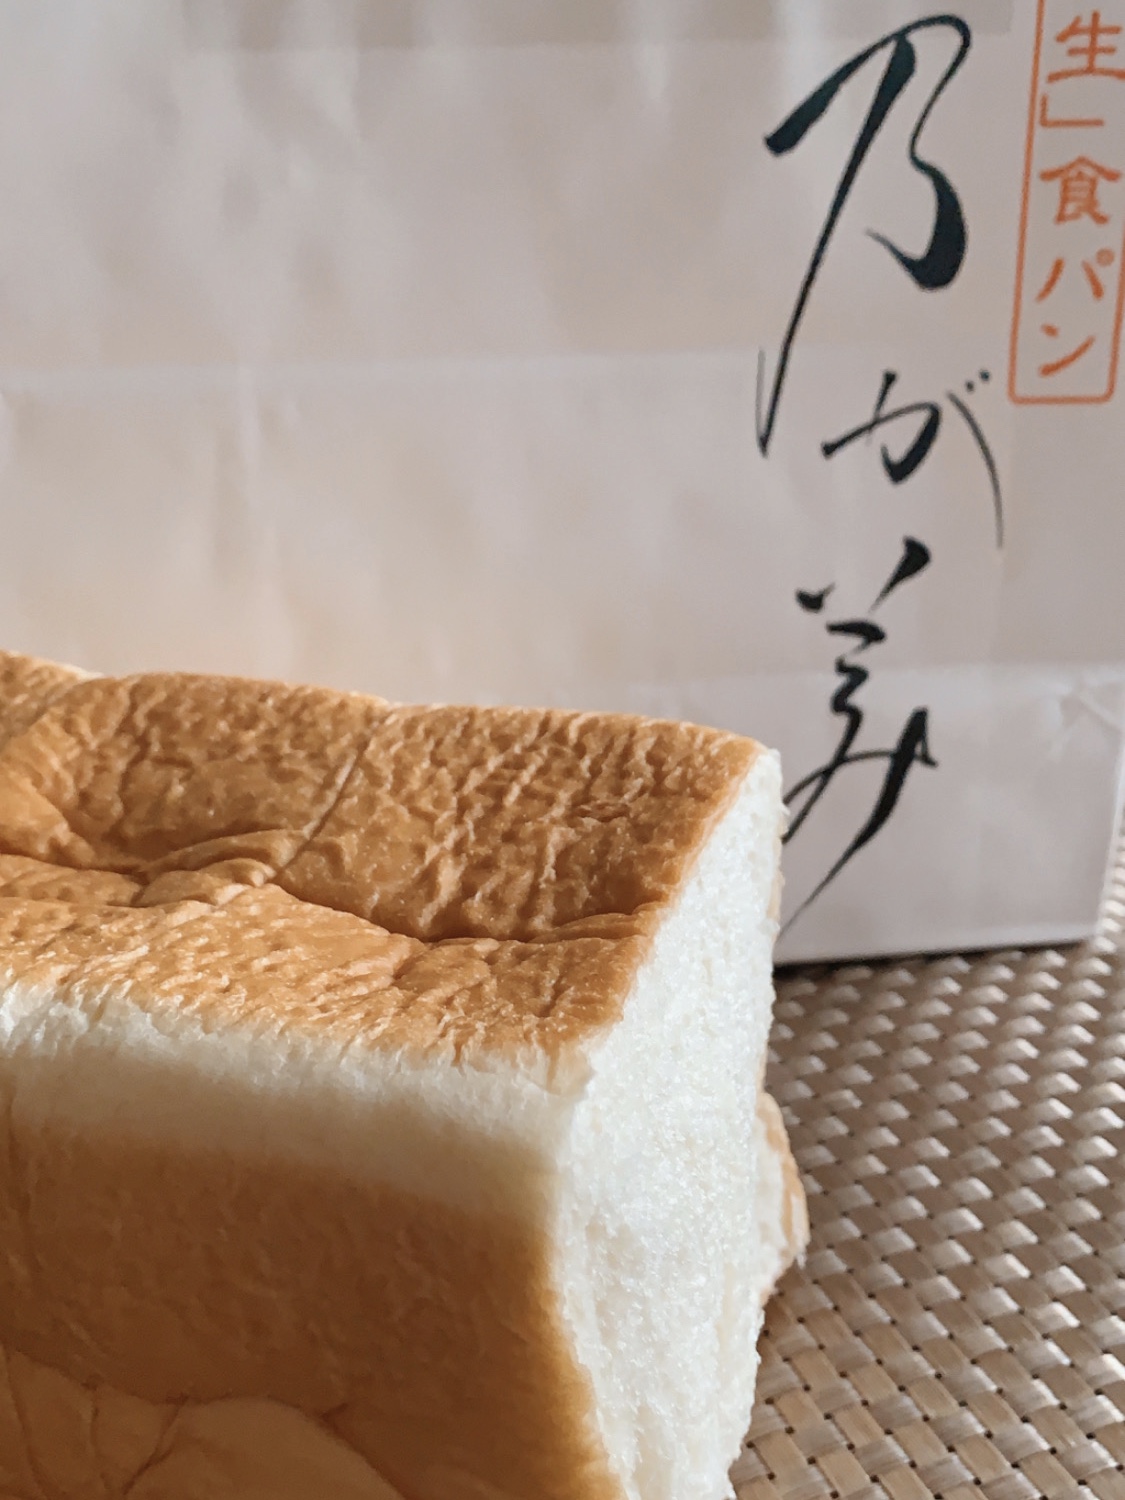 生食パン「乃が美」